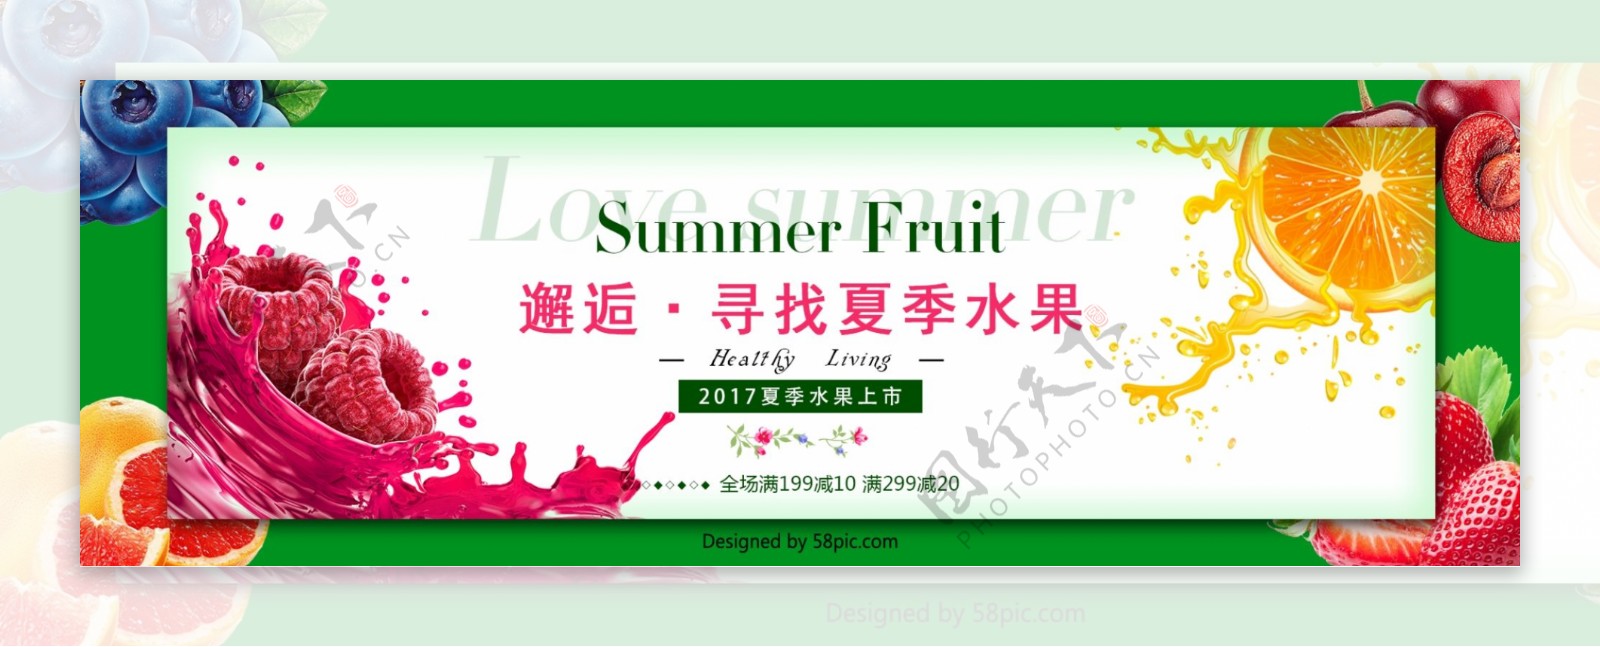 电商邂逅寻找夏季水果新品上市活动海报